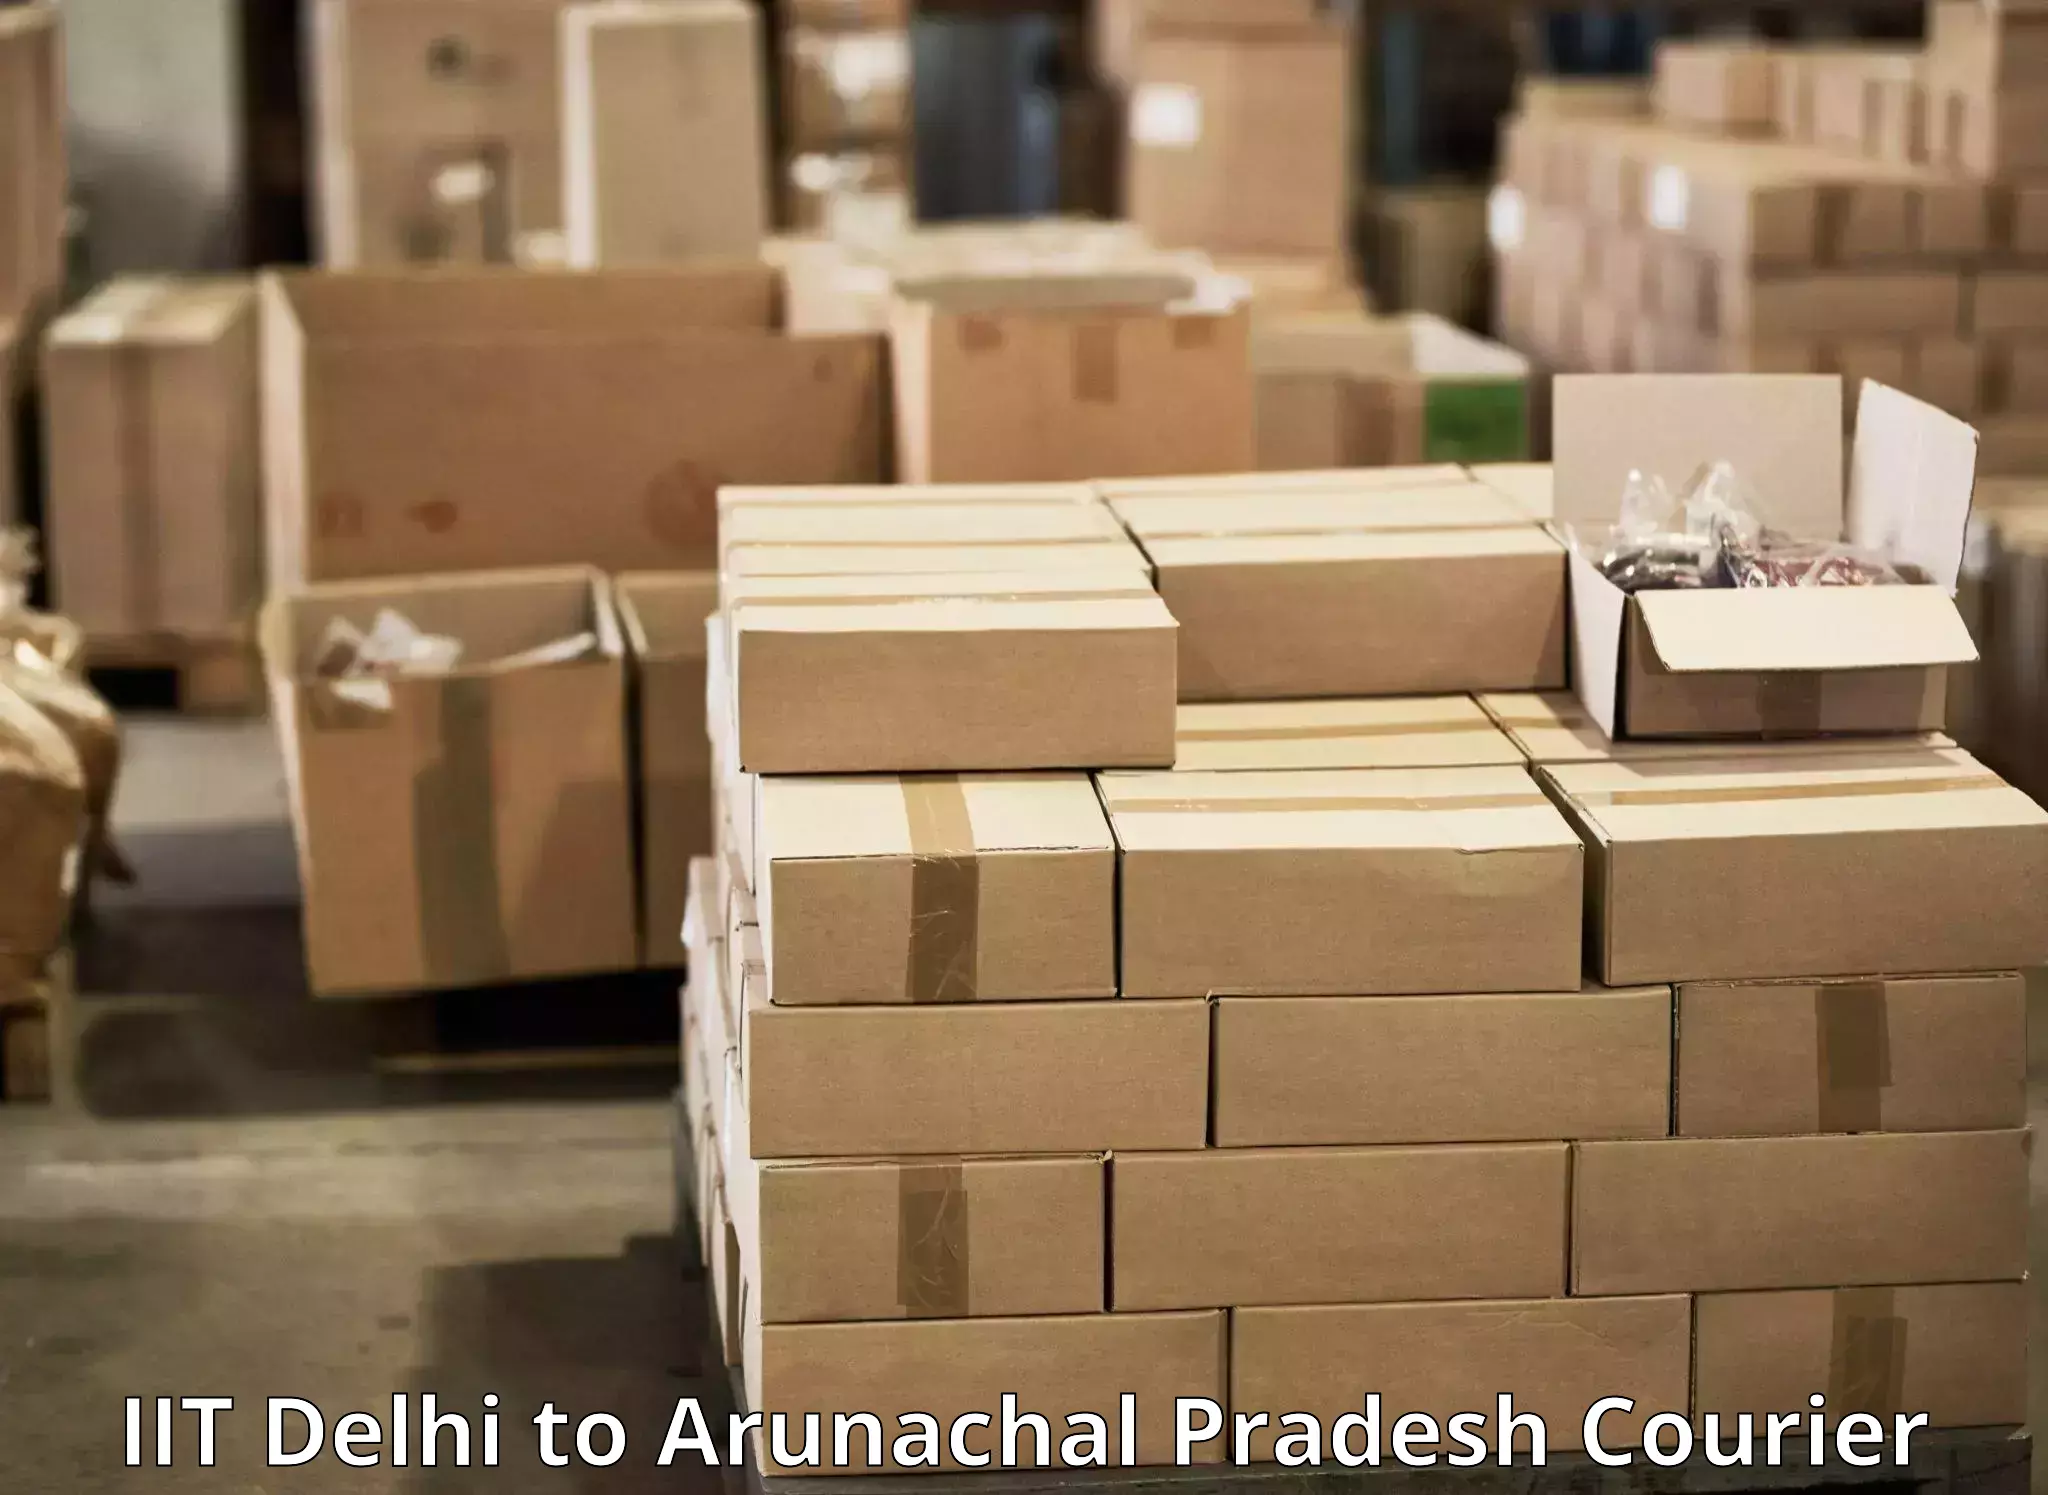 Efficient parcel tracking IIT Delhi to Tezu